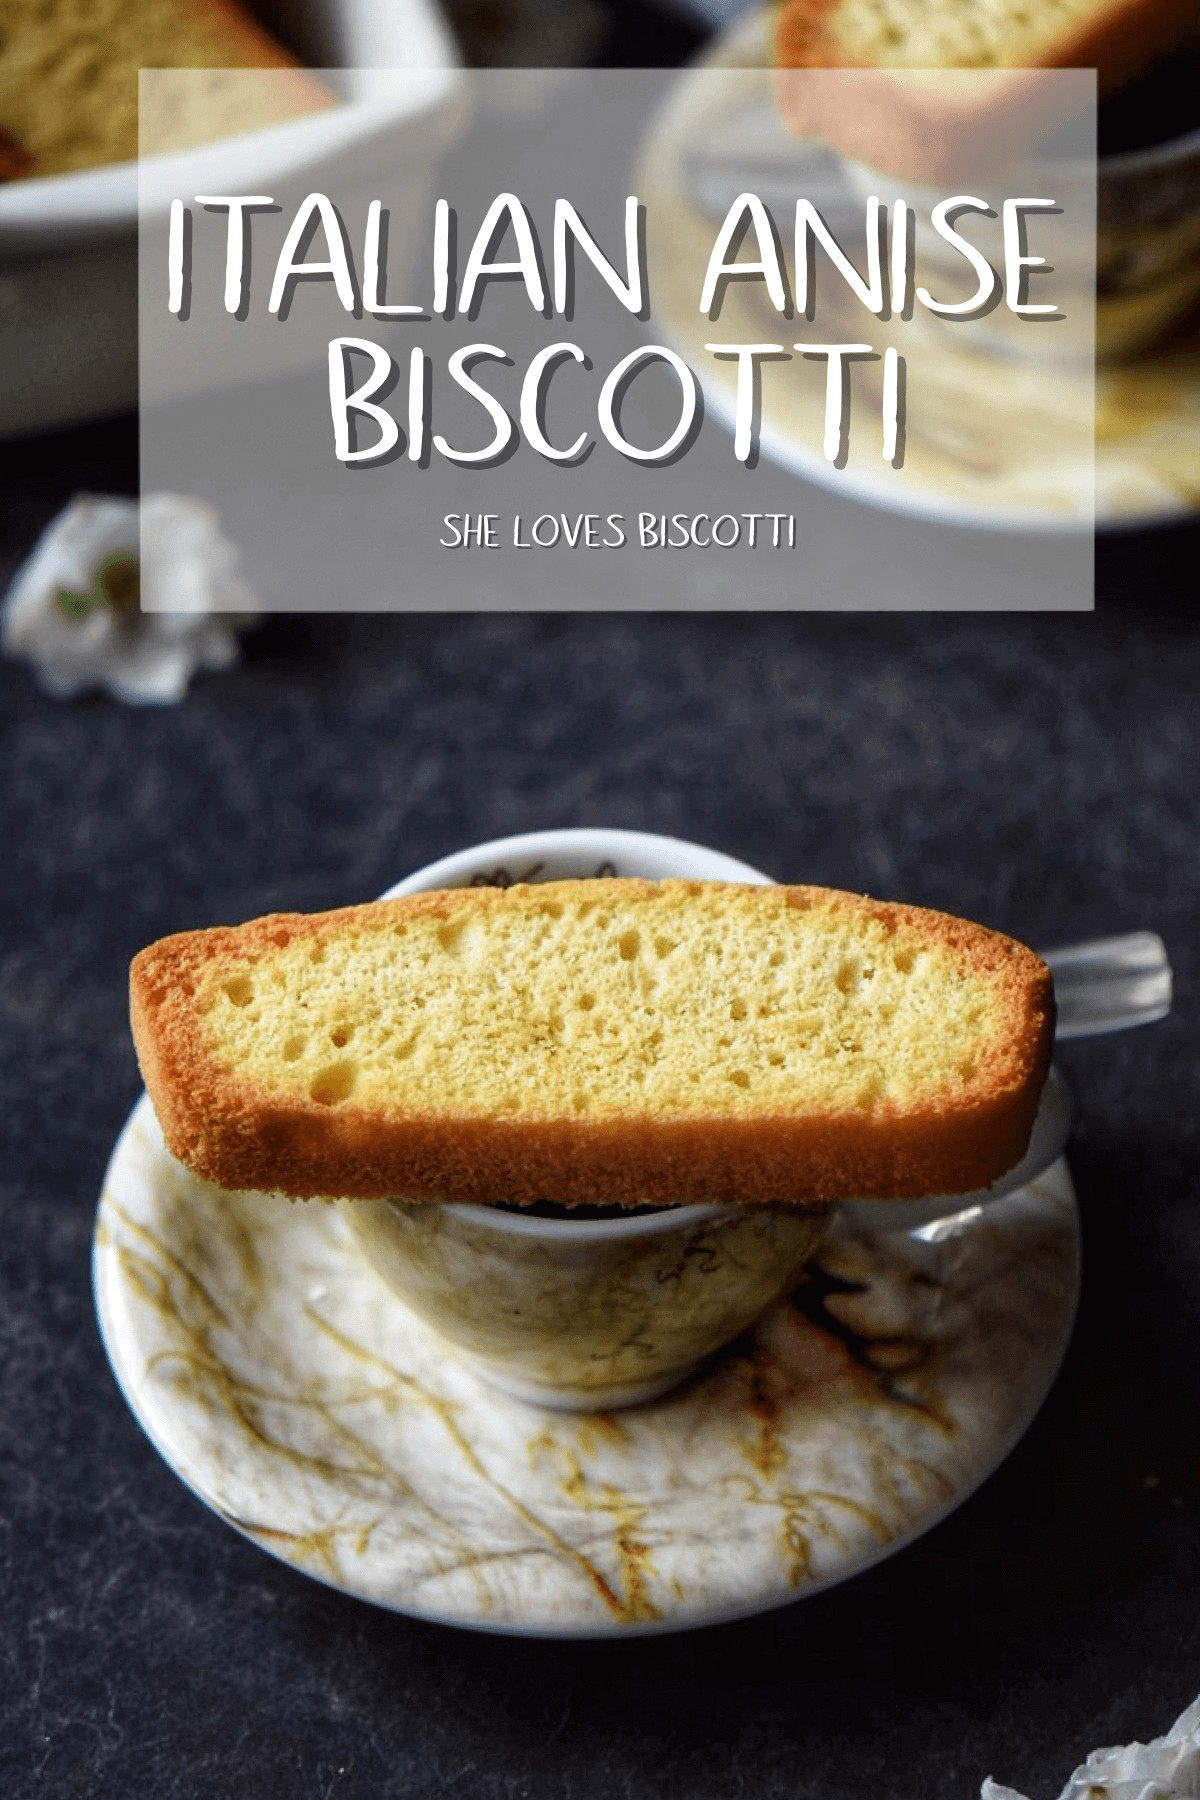 True Italian Biscotti Recipes
 Authentic Italian Anise Biscotti She Loves Biscotti